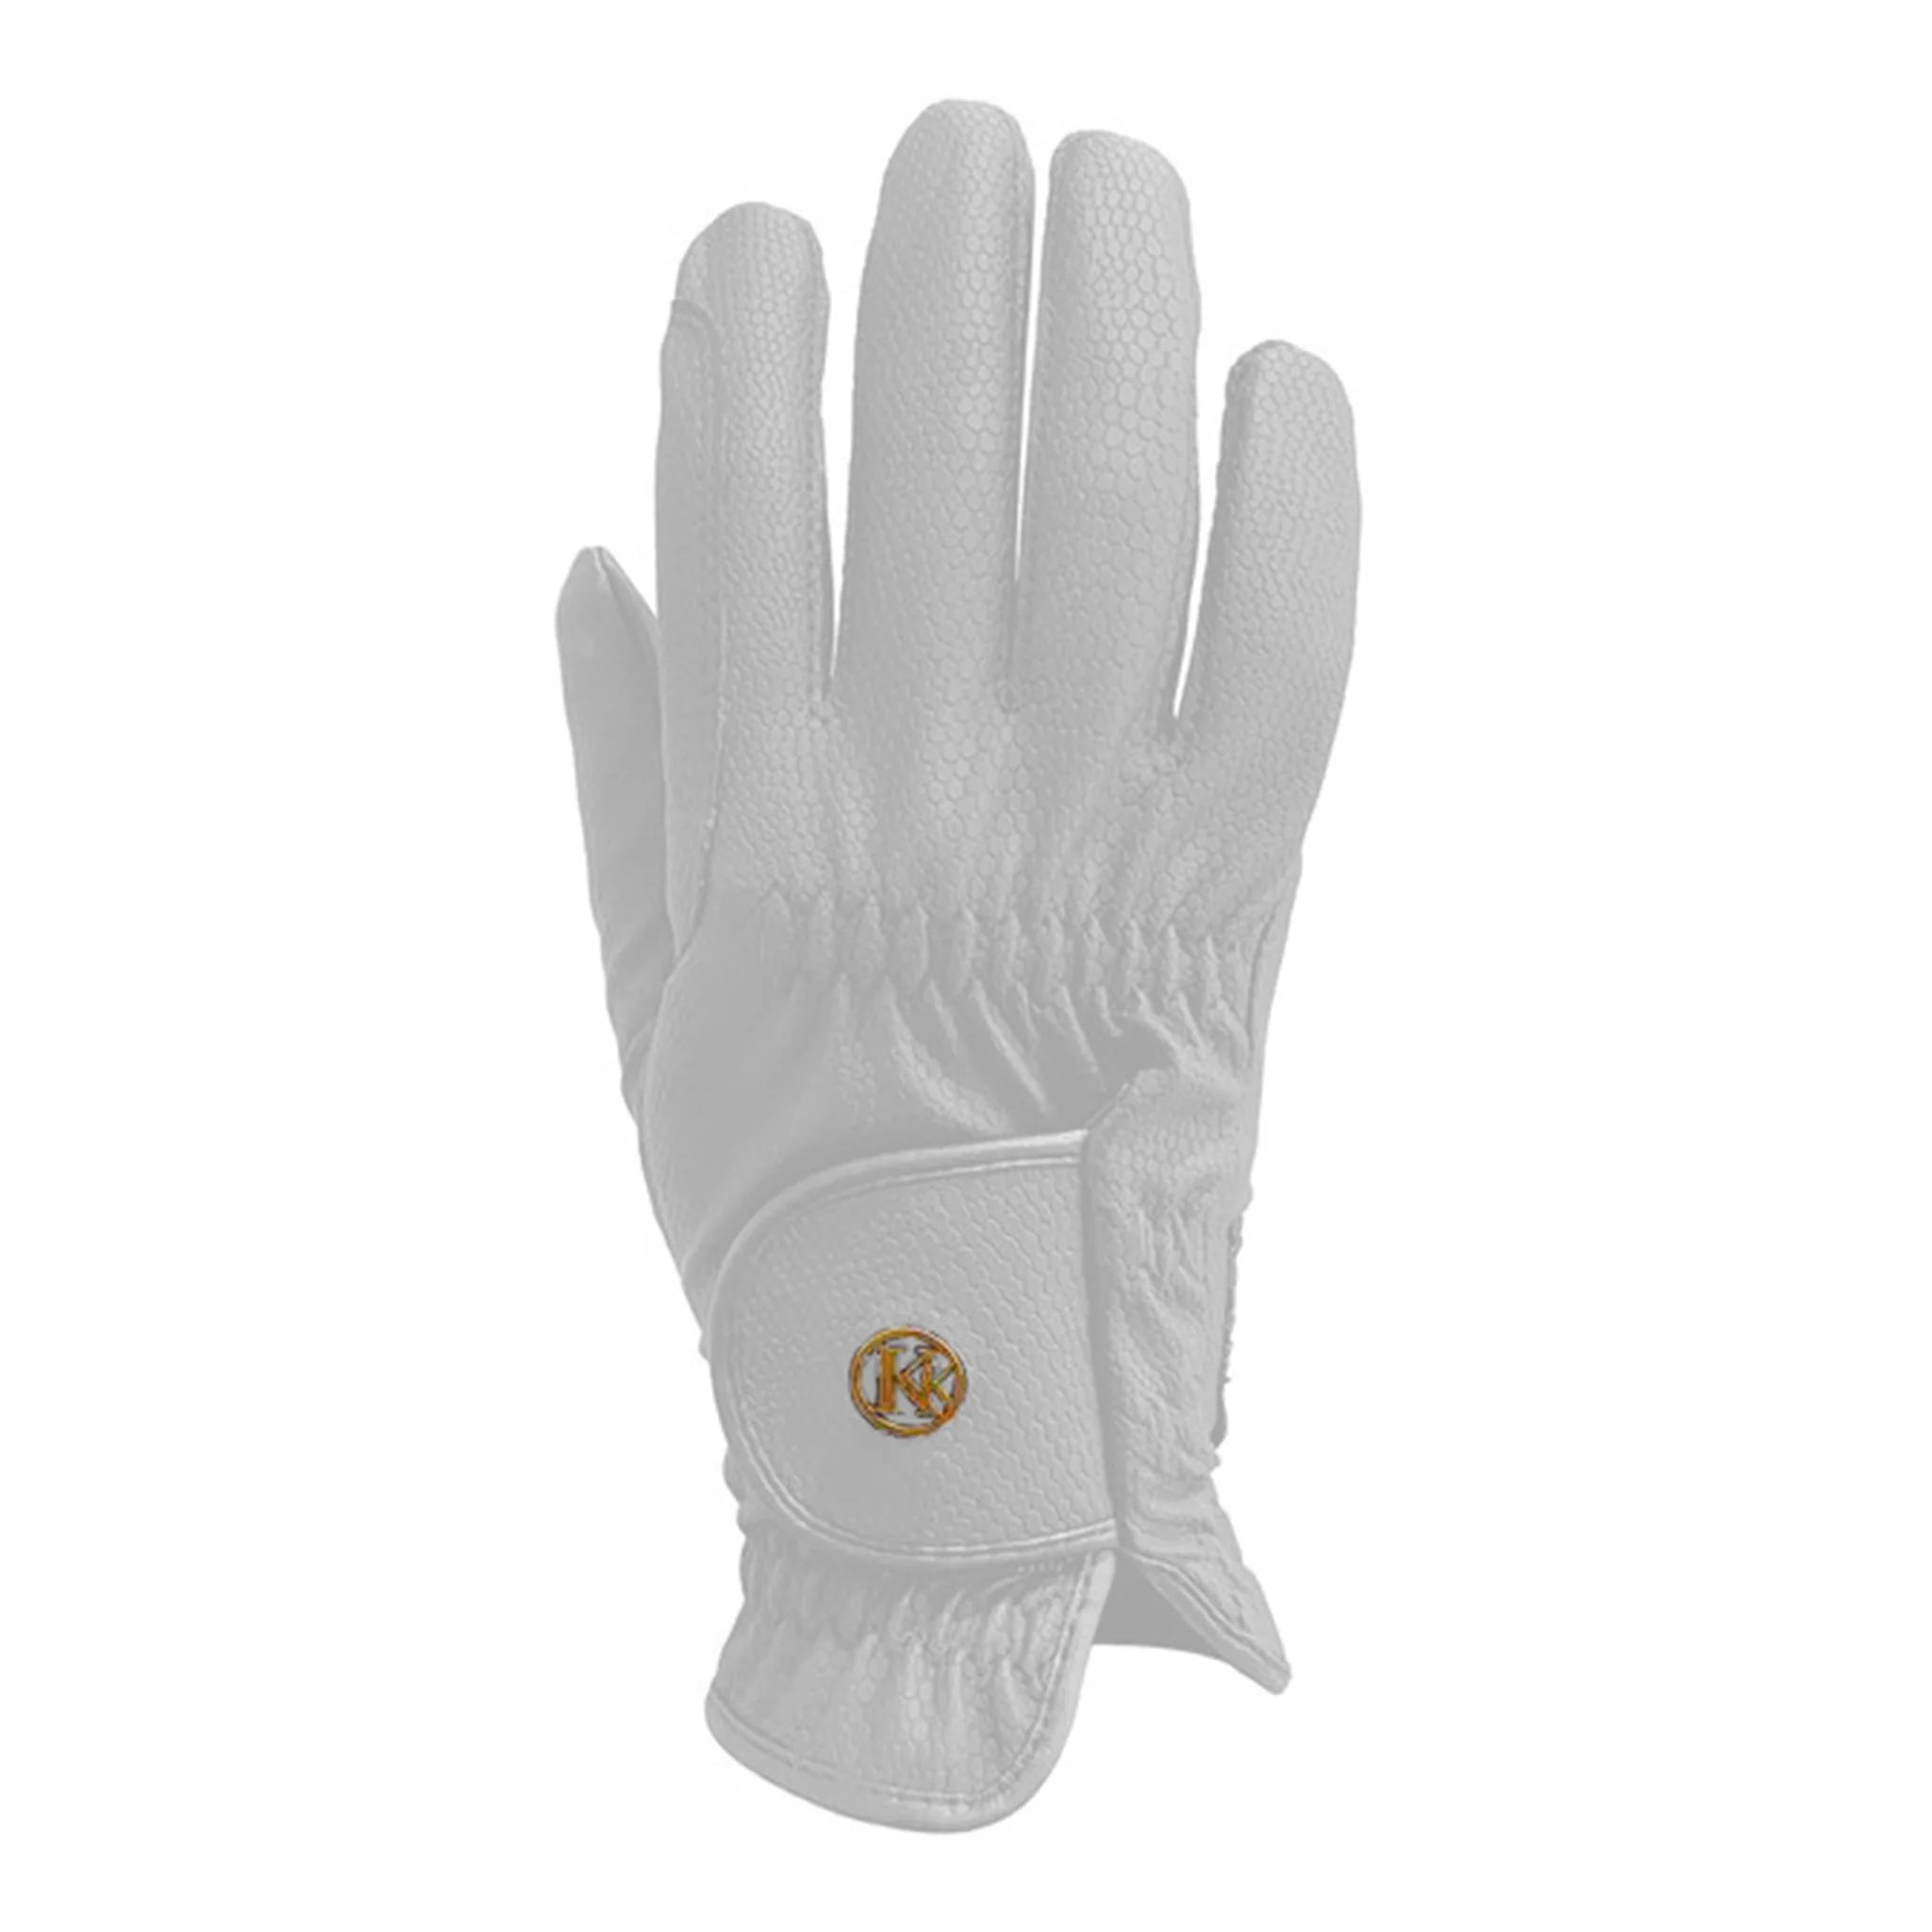 Kunkle Gloves White Show Gloves